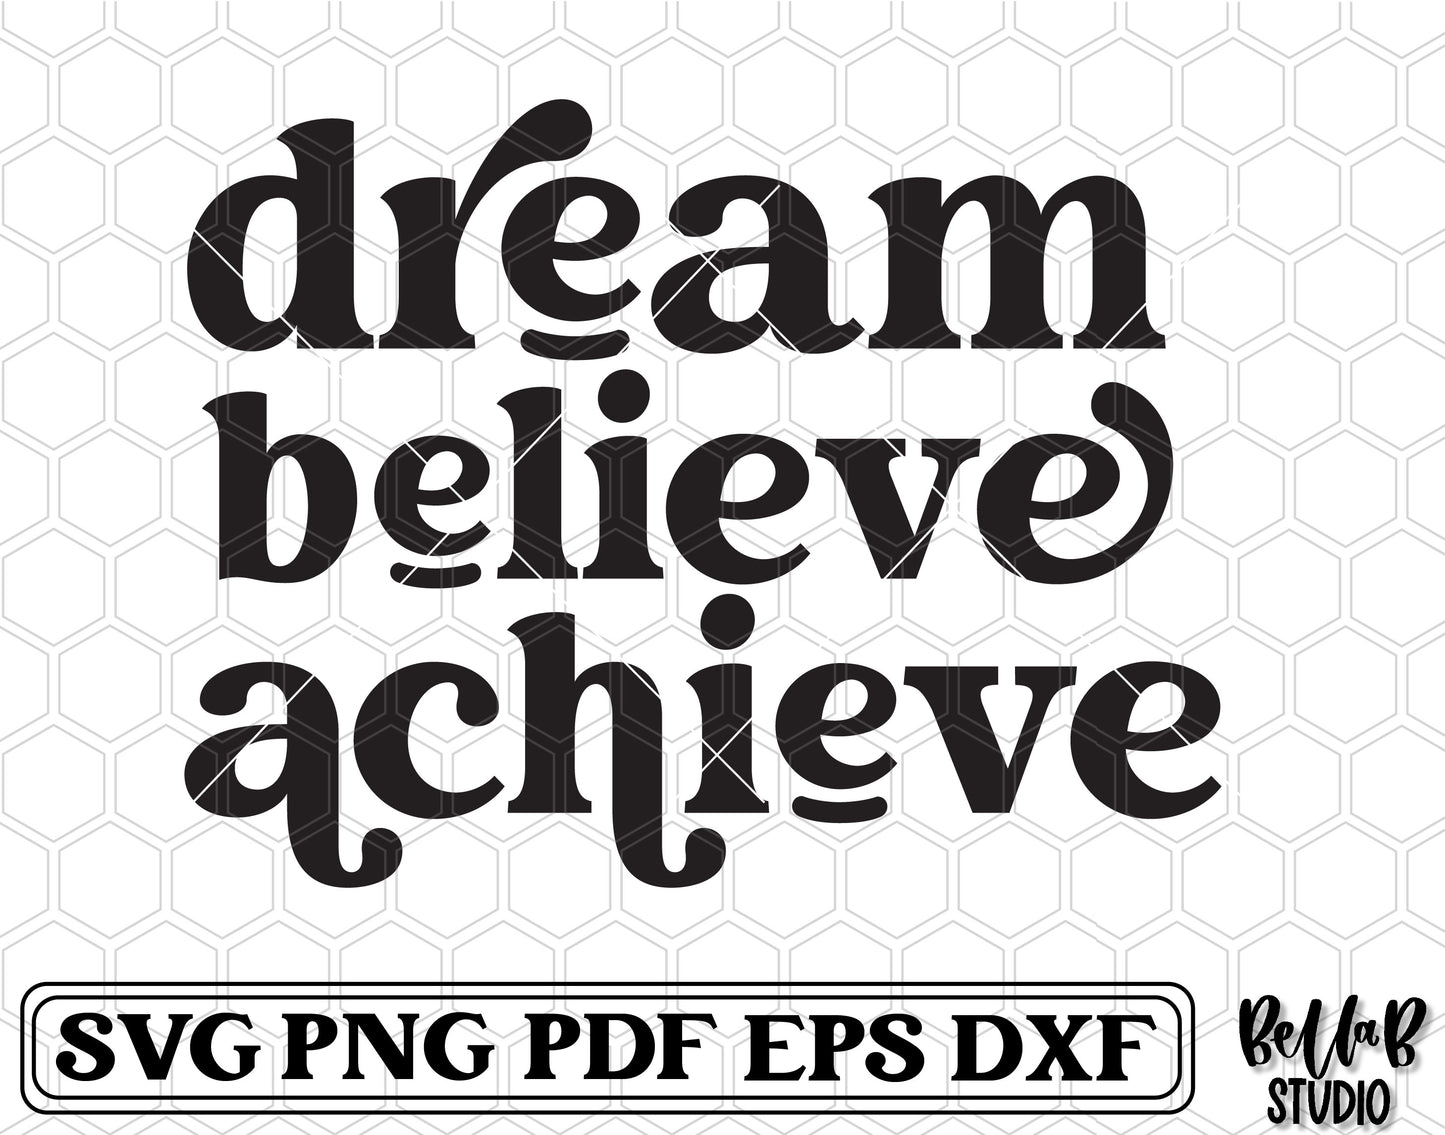 Dream Believe Achieve SVG File